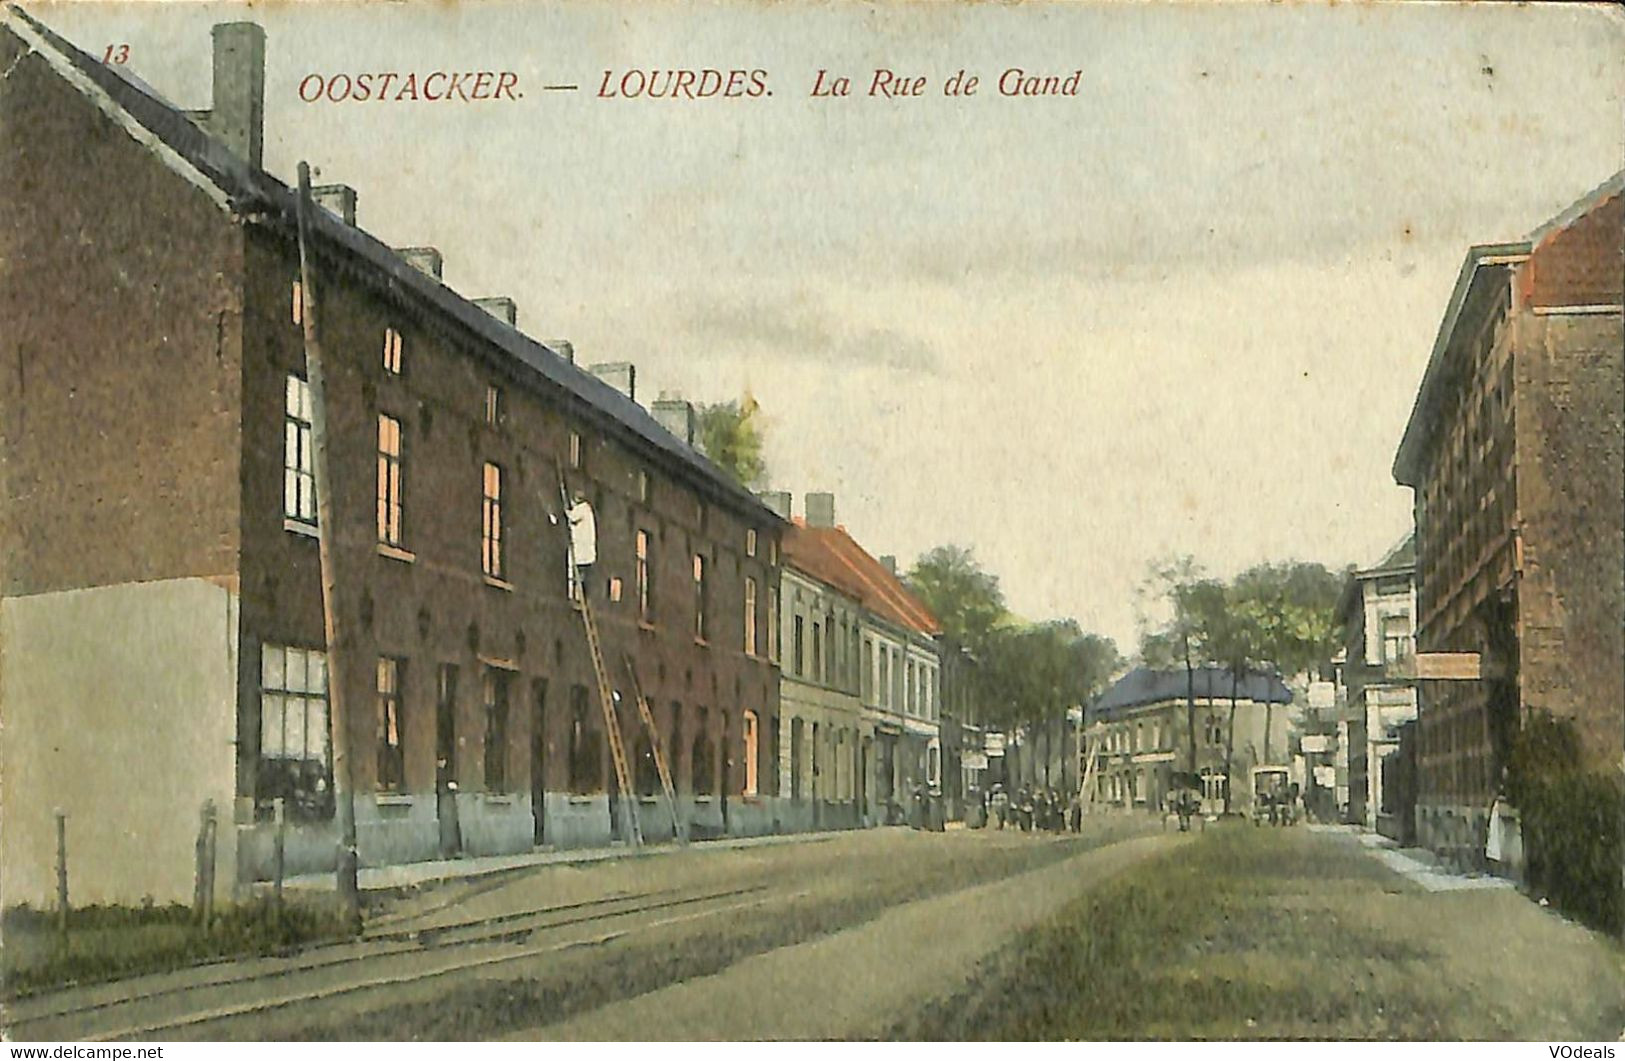 031 332 - CPA - Belgique - Oostacker - Lourdes - La Rue De Gand - Gent